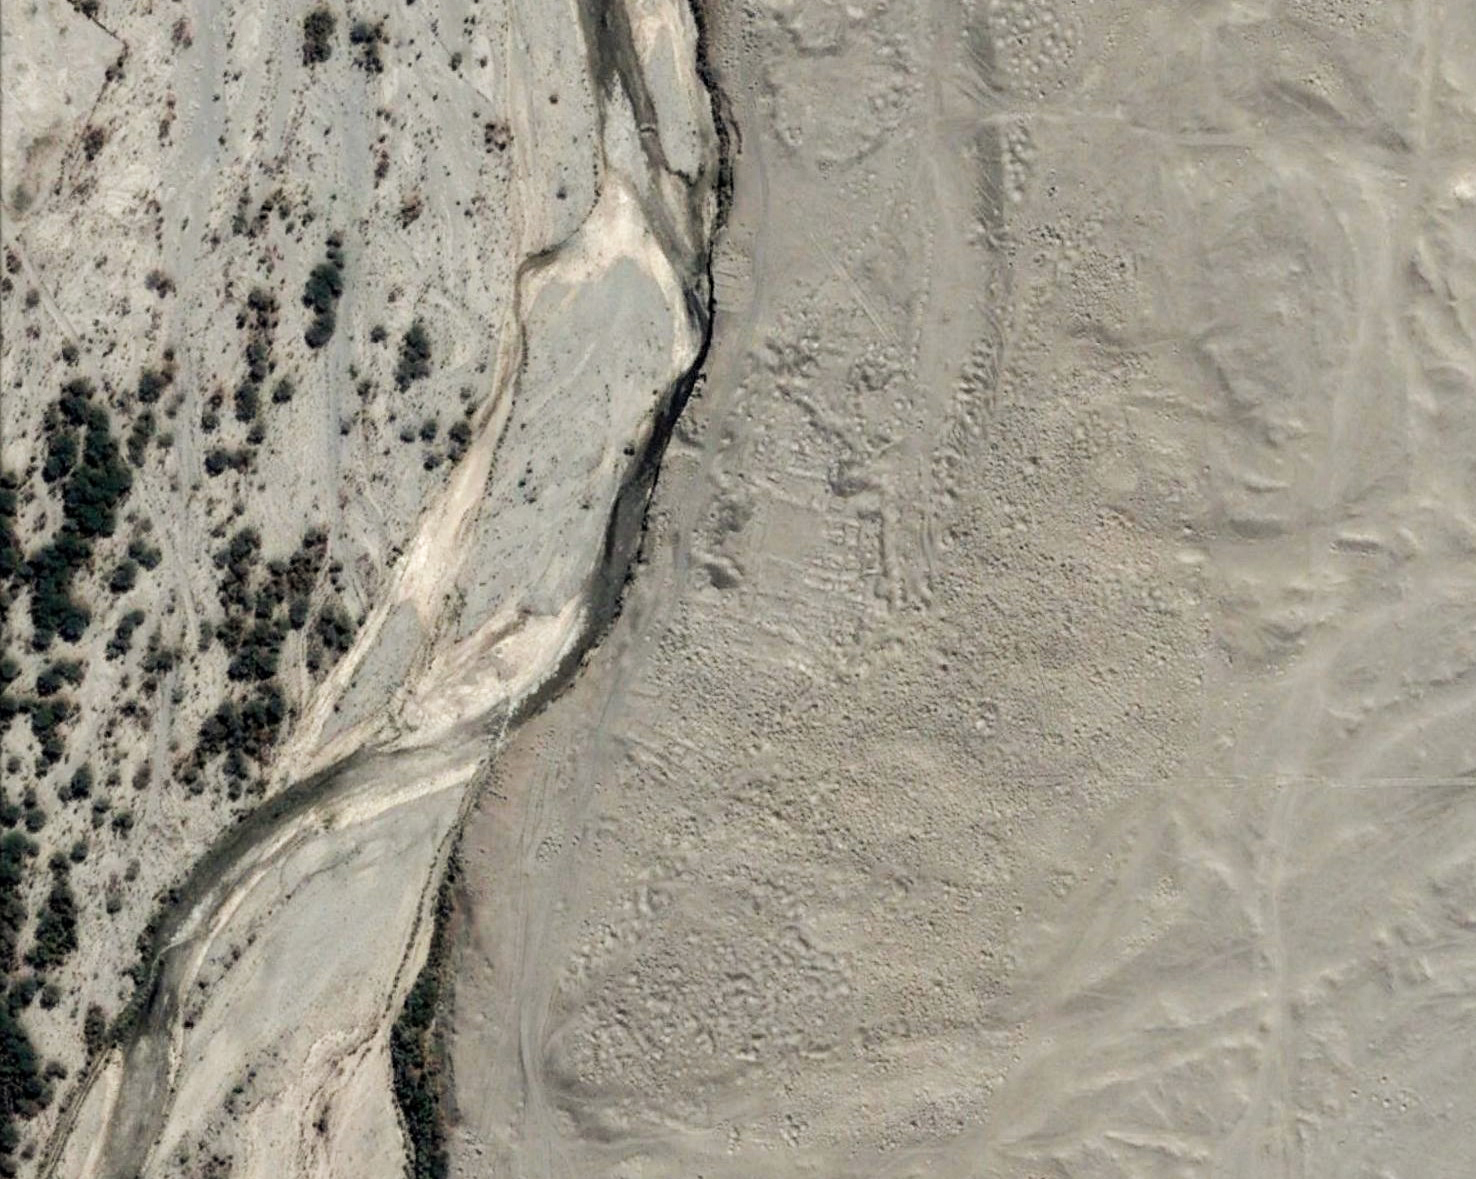 Ryöstetty kaupunki Nazcan autiomaassa. Image copyright Digital Globe.